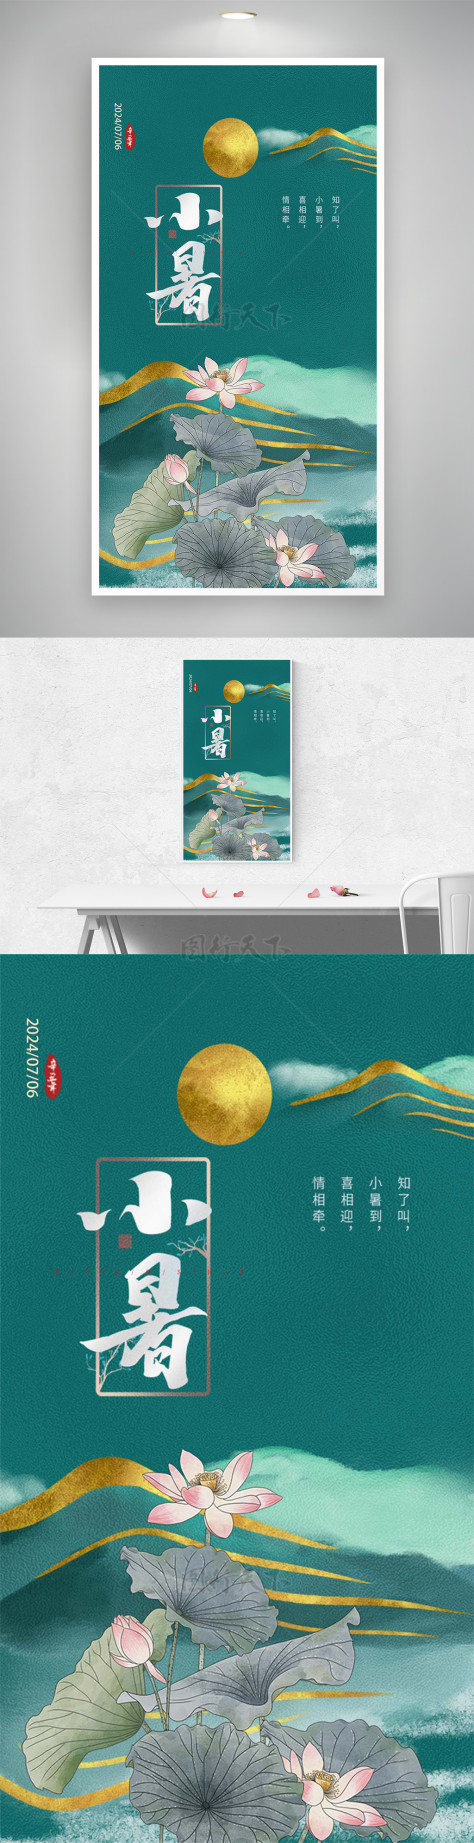 小暑节日节气宣传烫金纹理海报